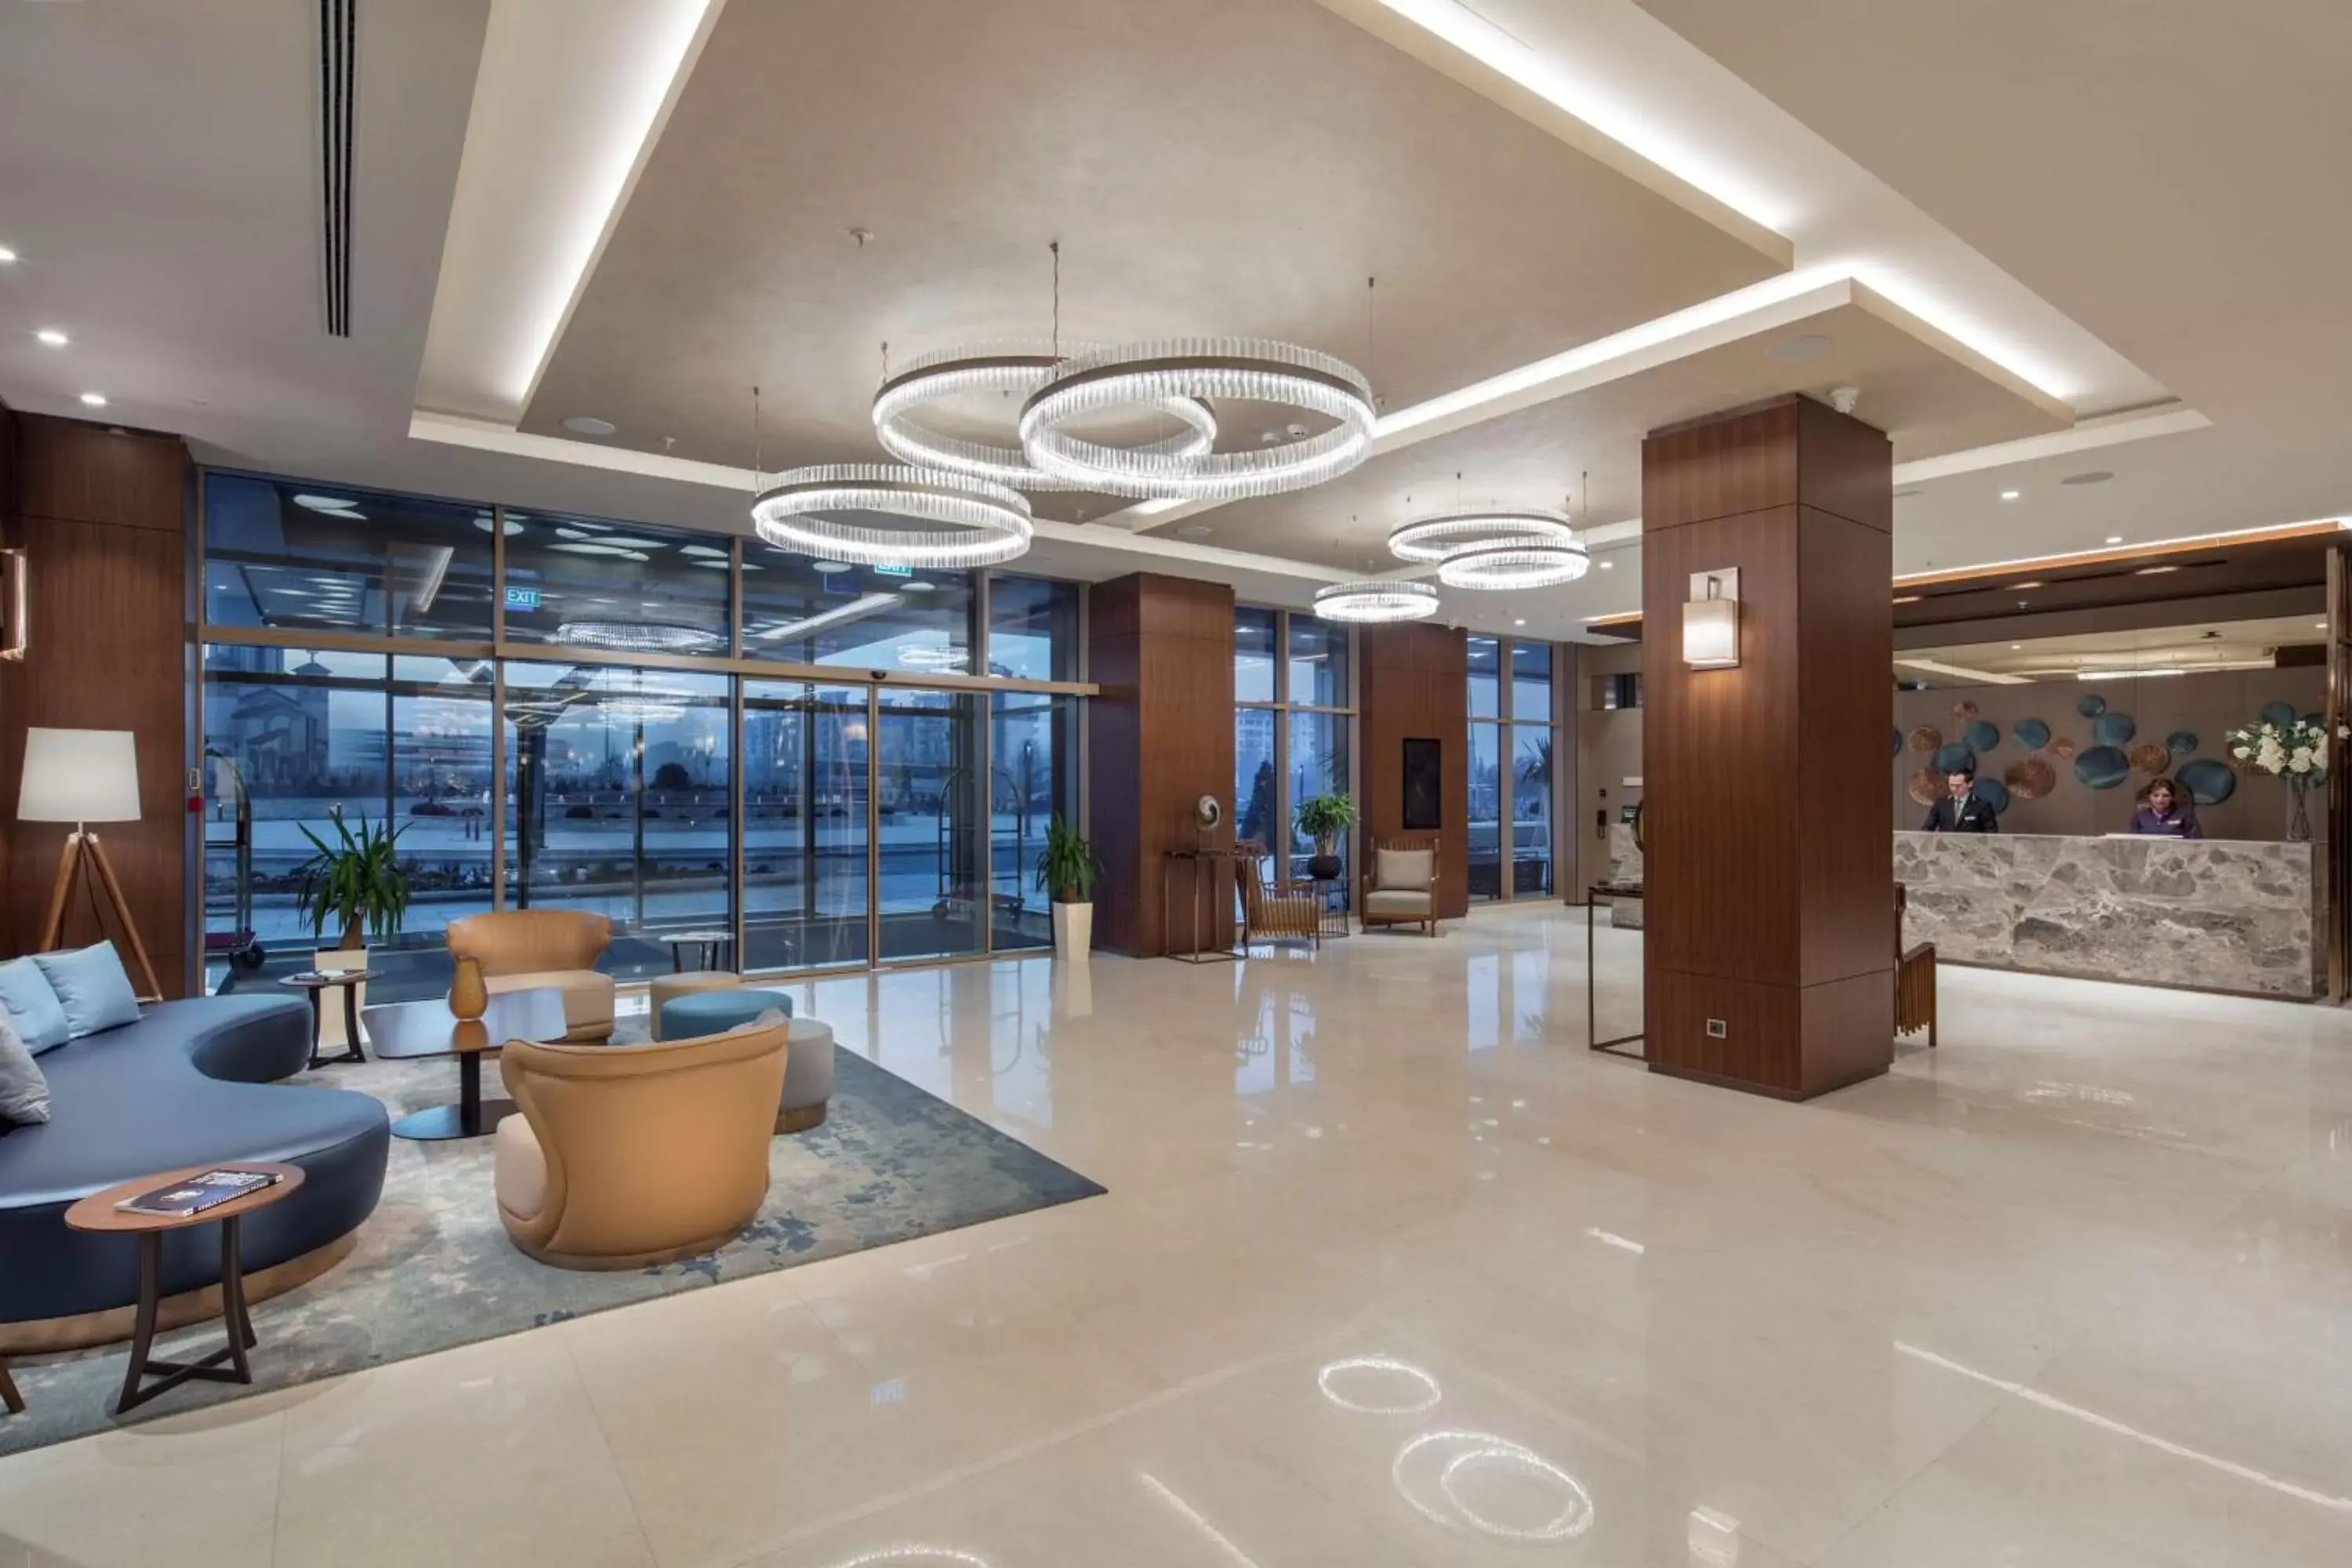 Lobby or reception, Lobby/Reception in DoubleTree By Hilton Skopje